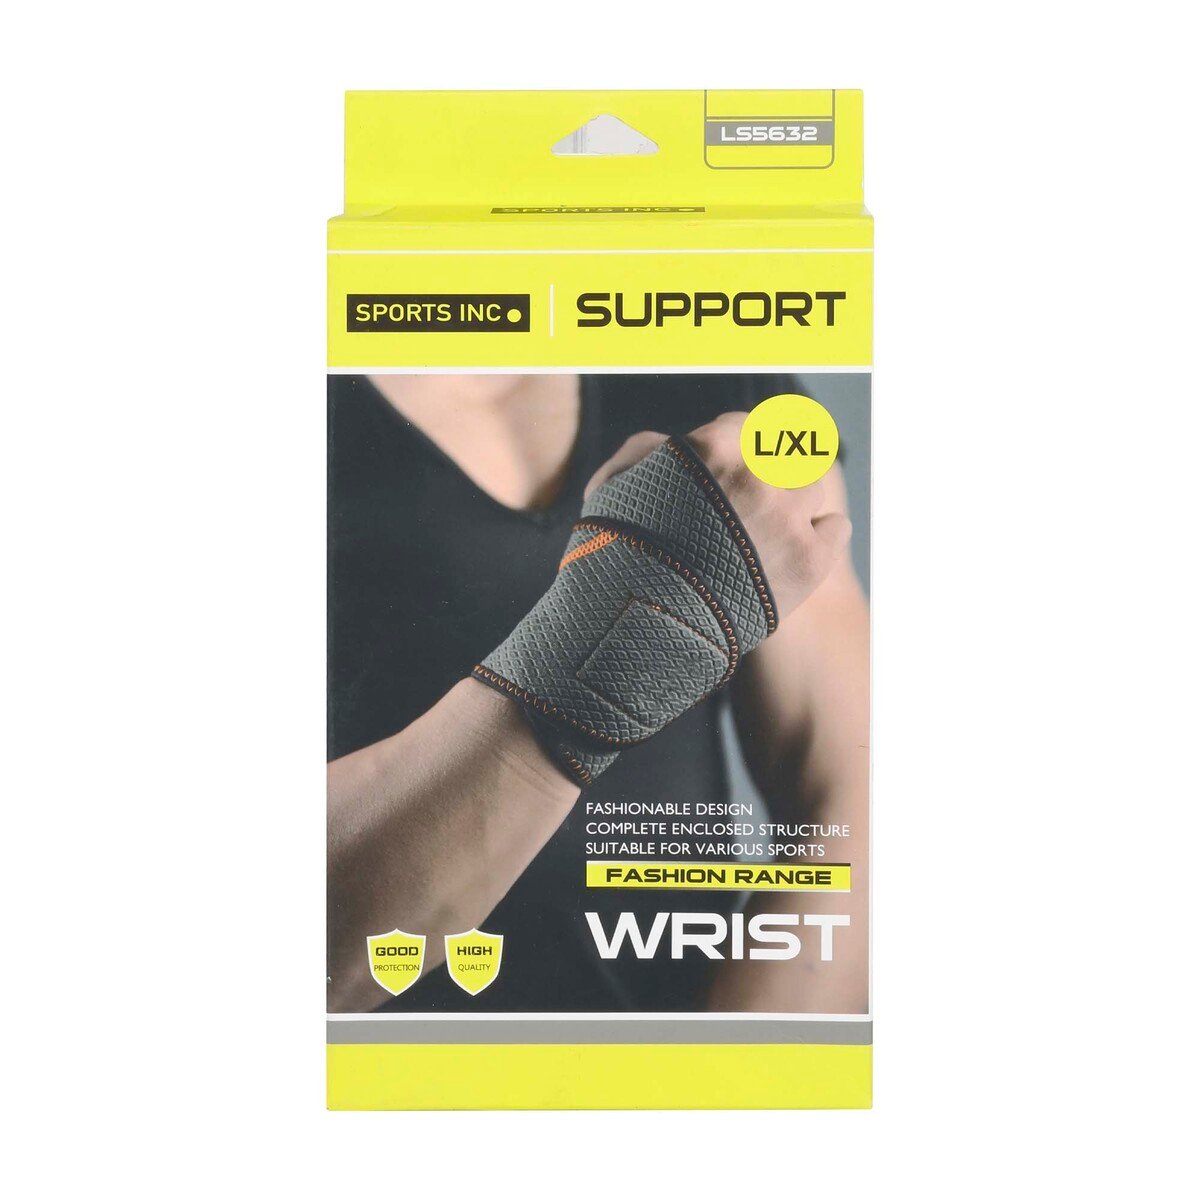 Sports Inc Wrist Support, Grey, LS5632